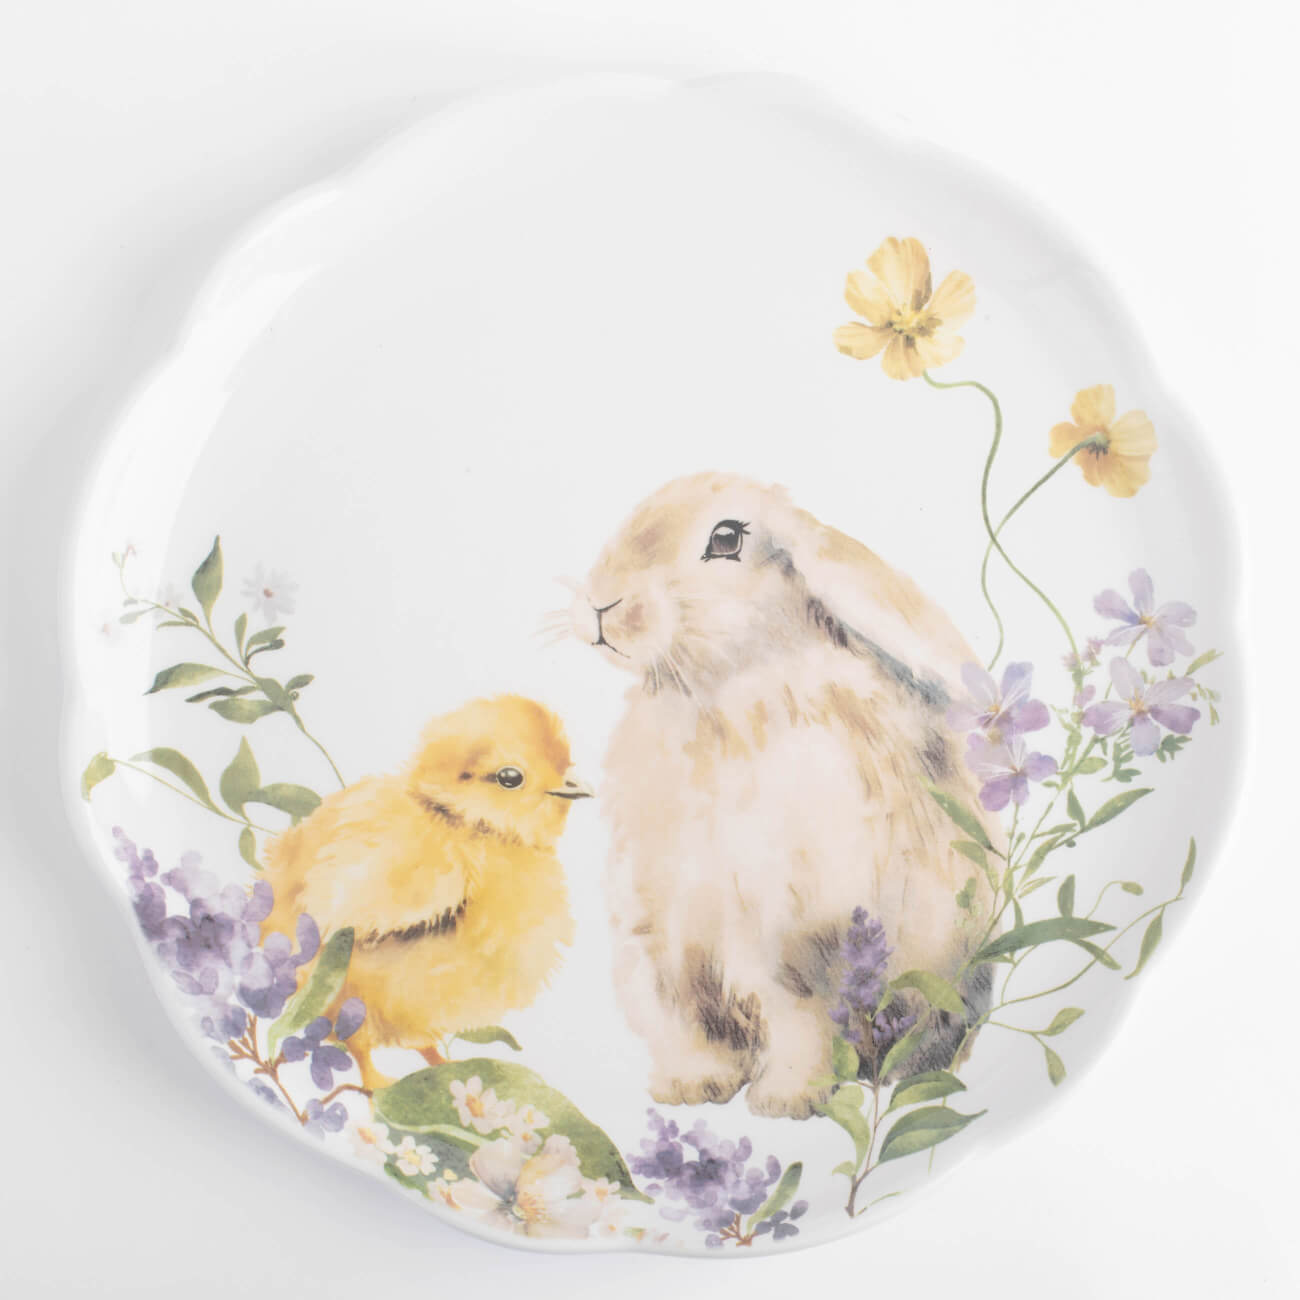 Тарелка закусочная, 24 см, керамика, белая, Кролик и цыпленок в цветах, Easter тарелка десертная 20 см керамика белая кролик в ах easter